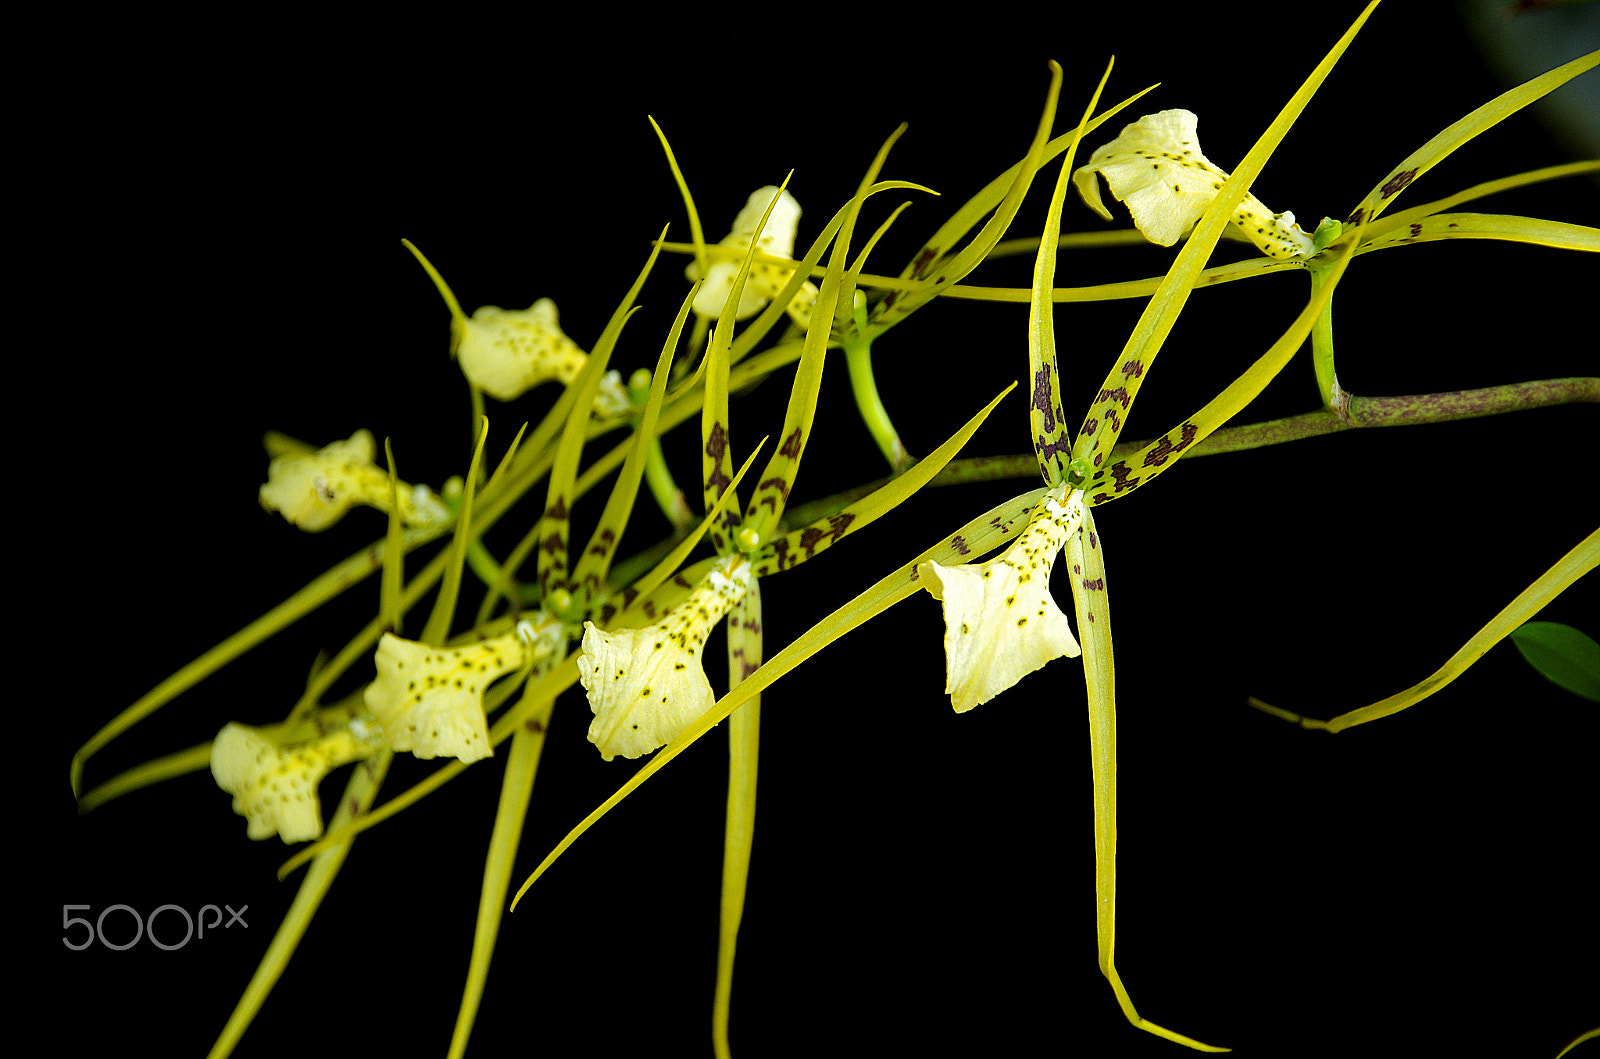 Pentax K-5 IIs + Sigma 17-50mm F2.8 EX DC HSM sample photo. Brassia - spider orchid - lan nhện - vũ nữ nhện xanh photography